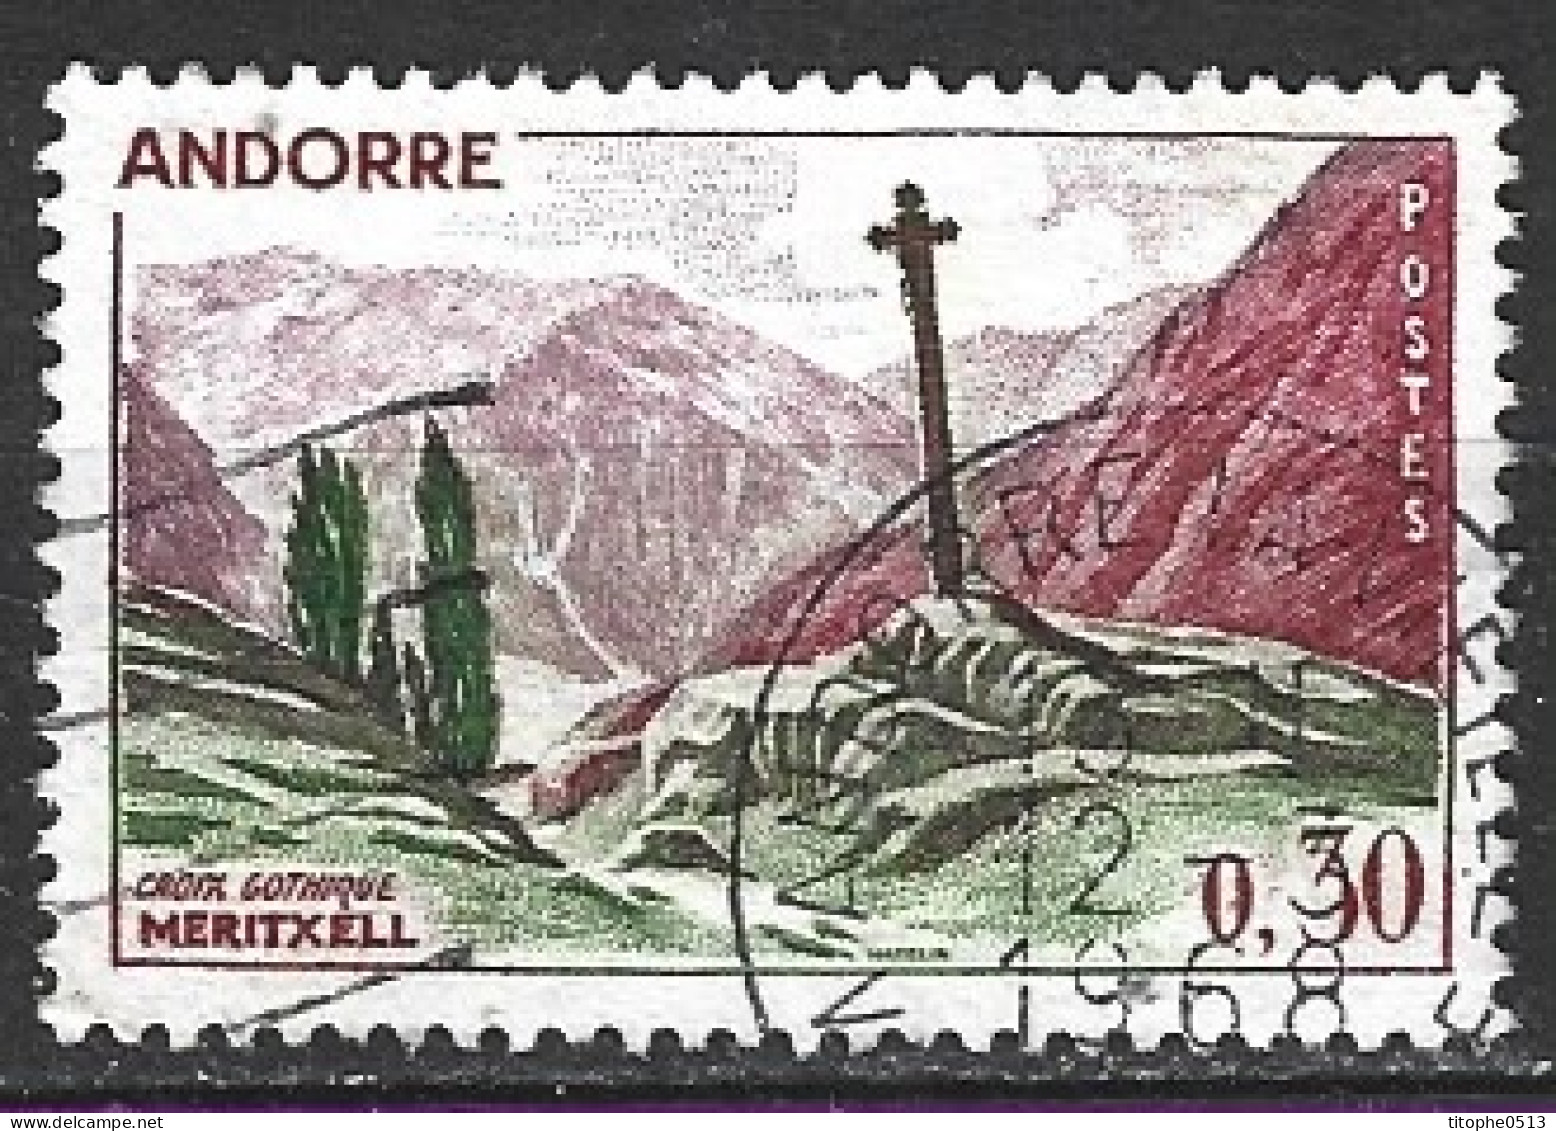 ANDORRE. N°159 Oblitéré De 1961-71. Croix Gothique De Meritxell. - Used Stamps